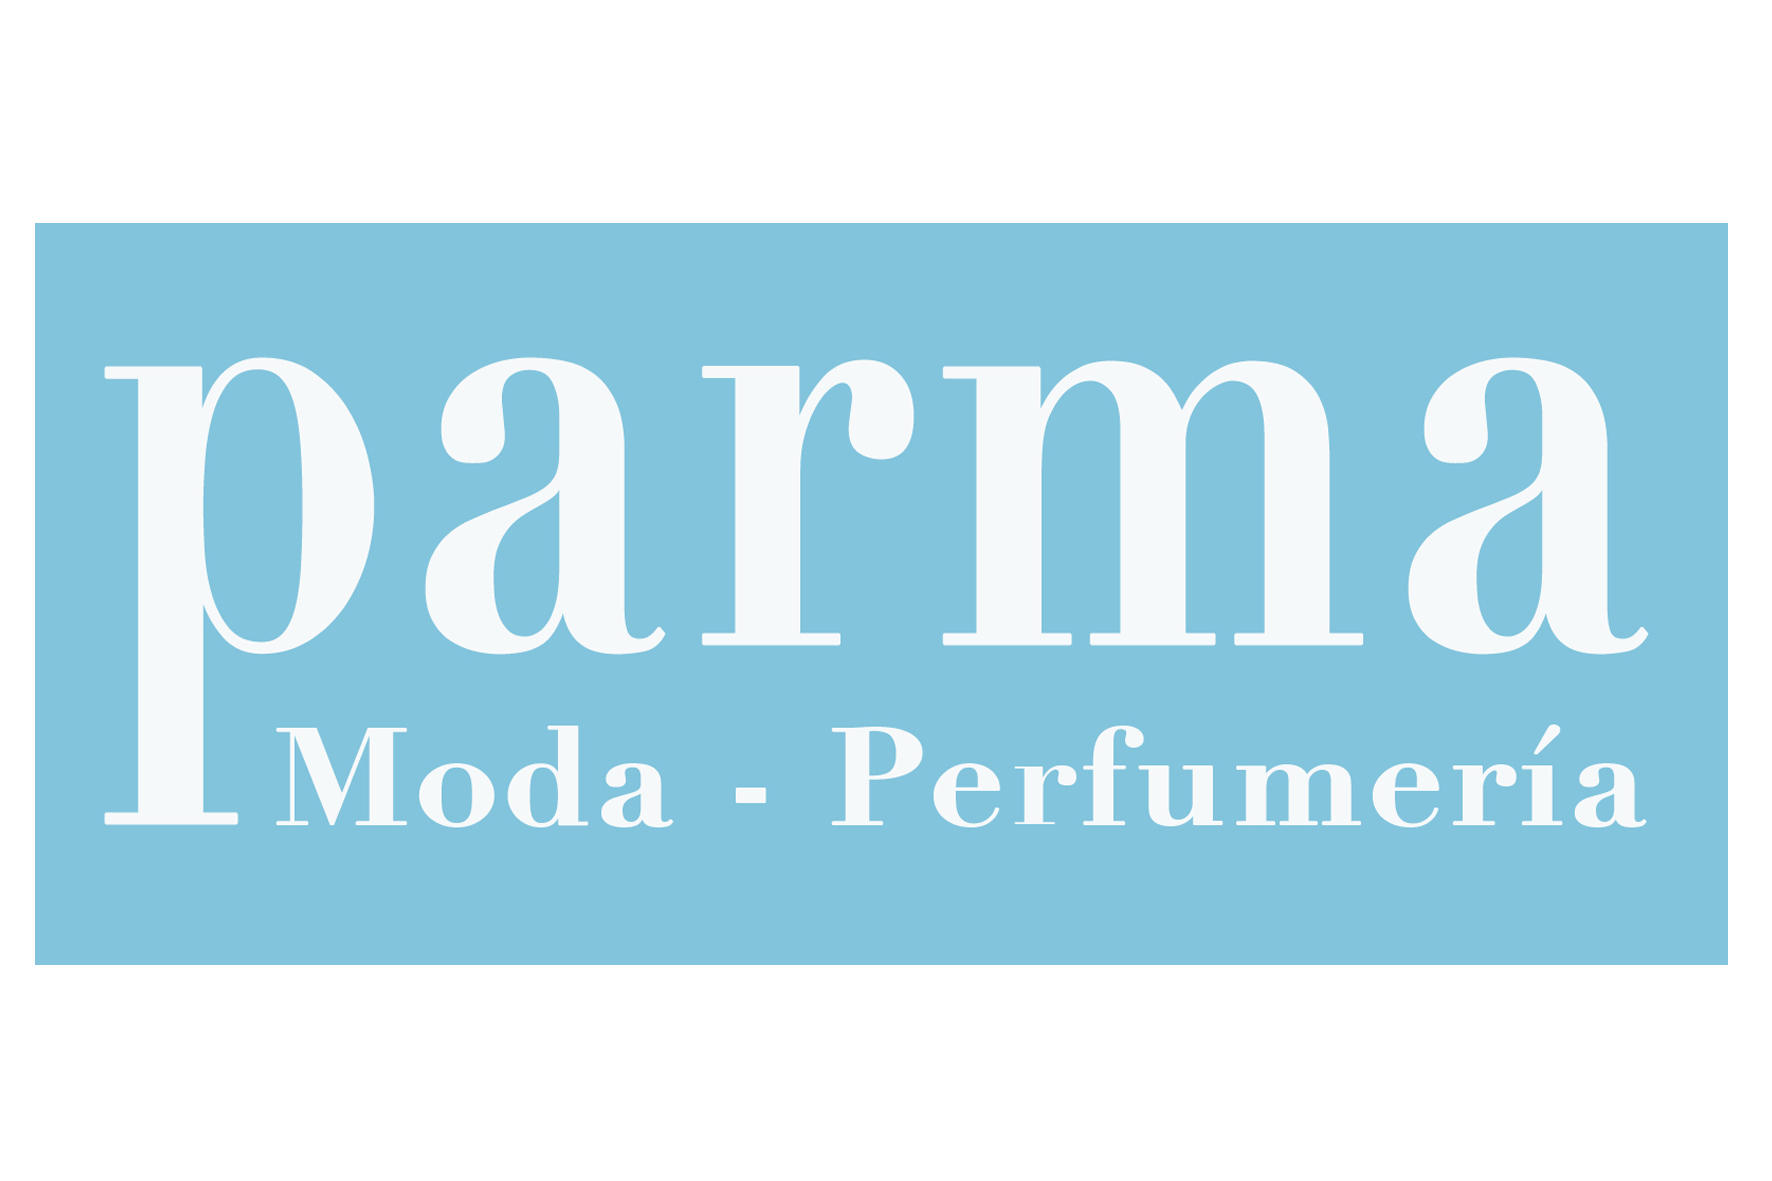 Parma Moda y Perfumería